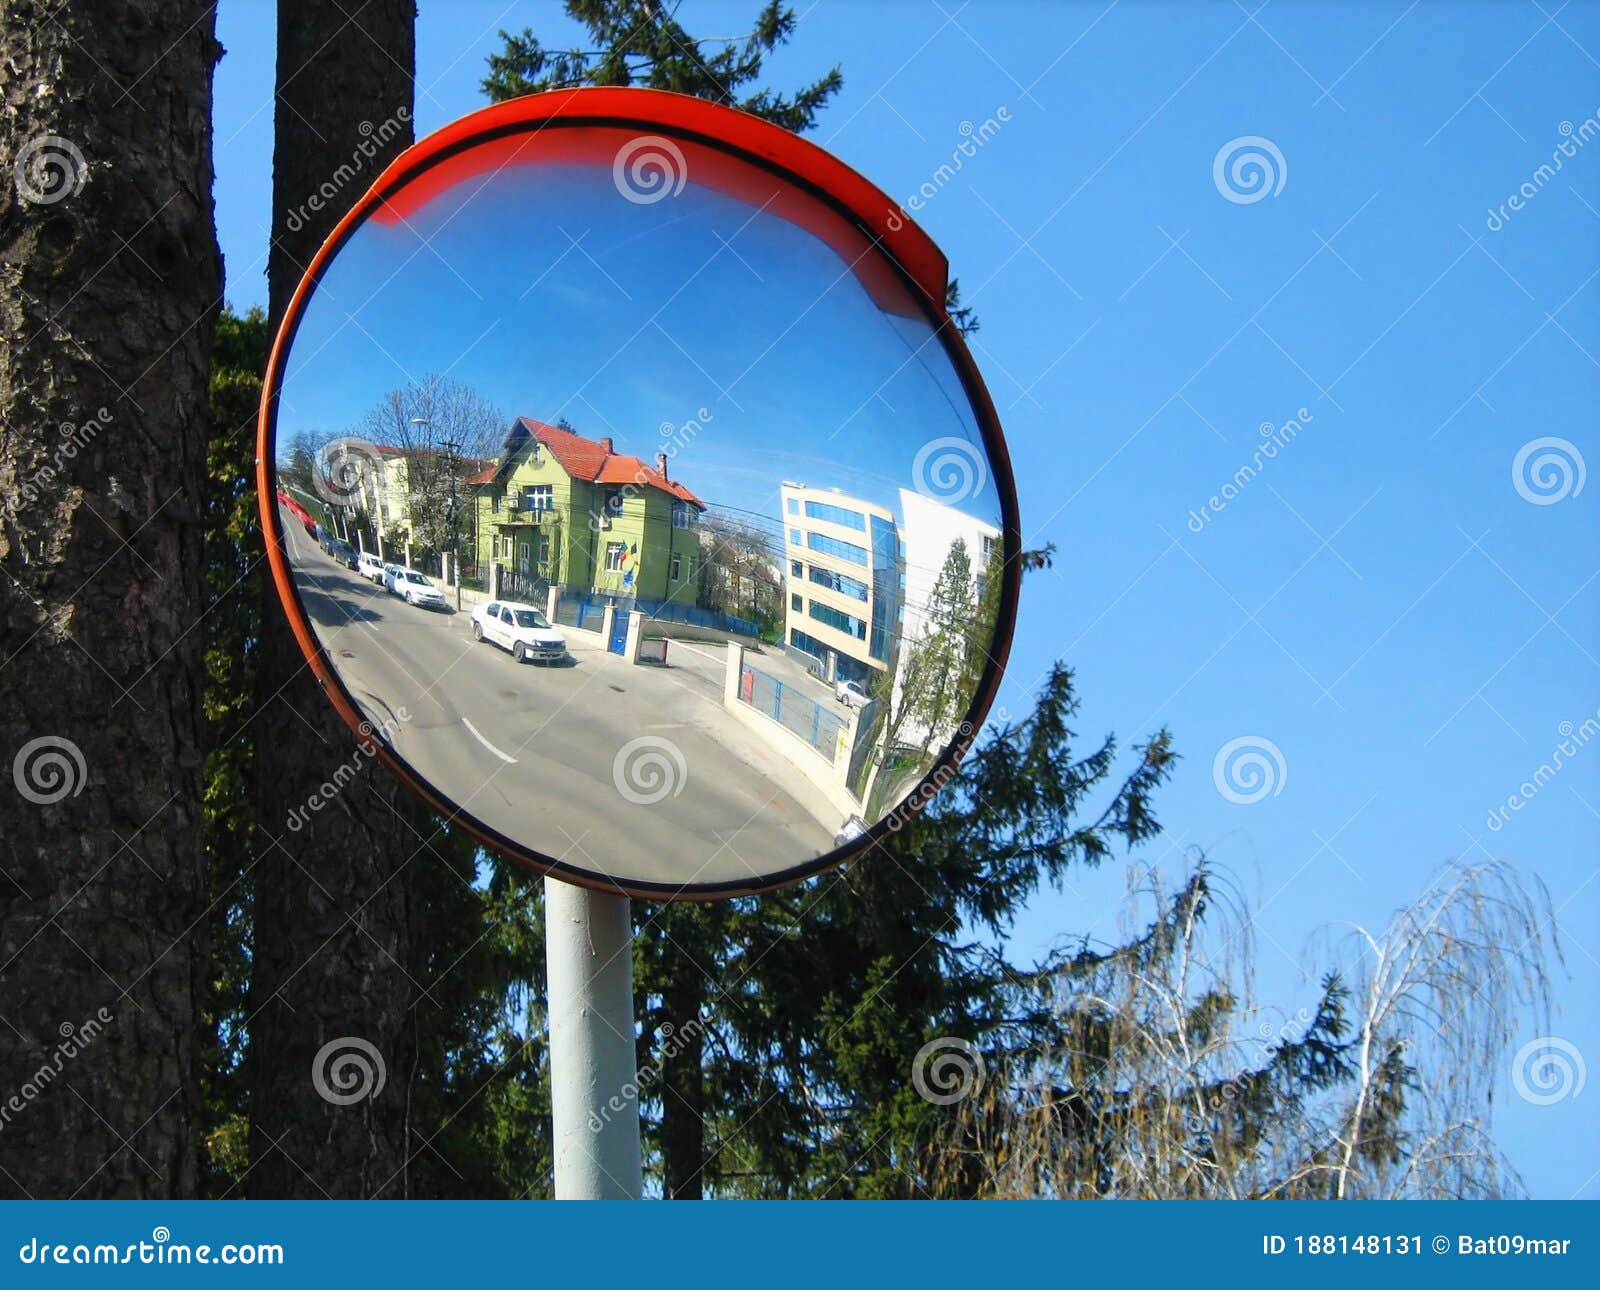 Driveway Mirrors & Traffic Mirrors